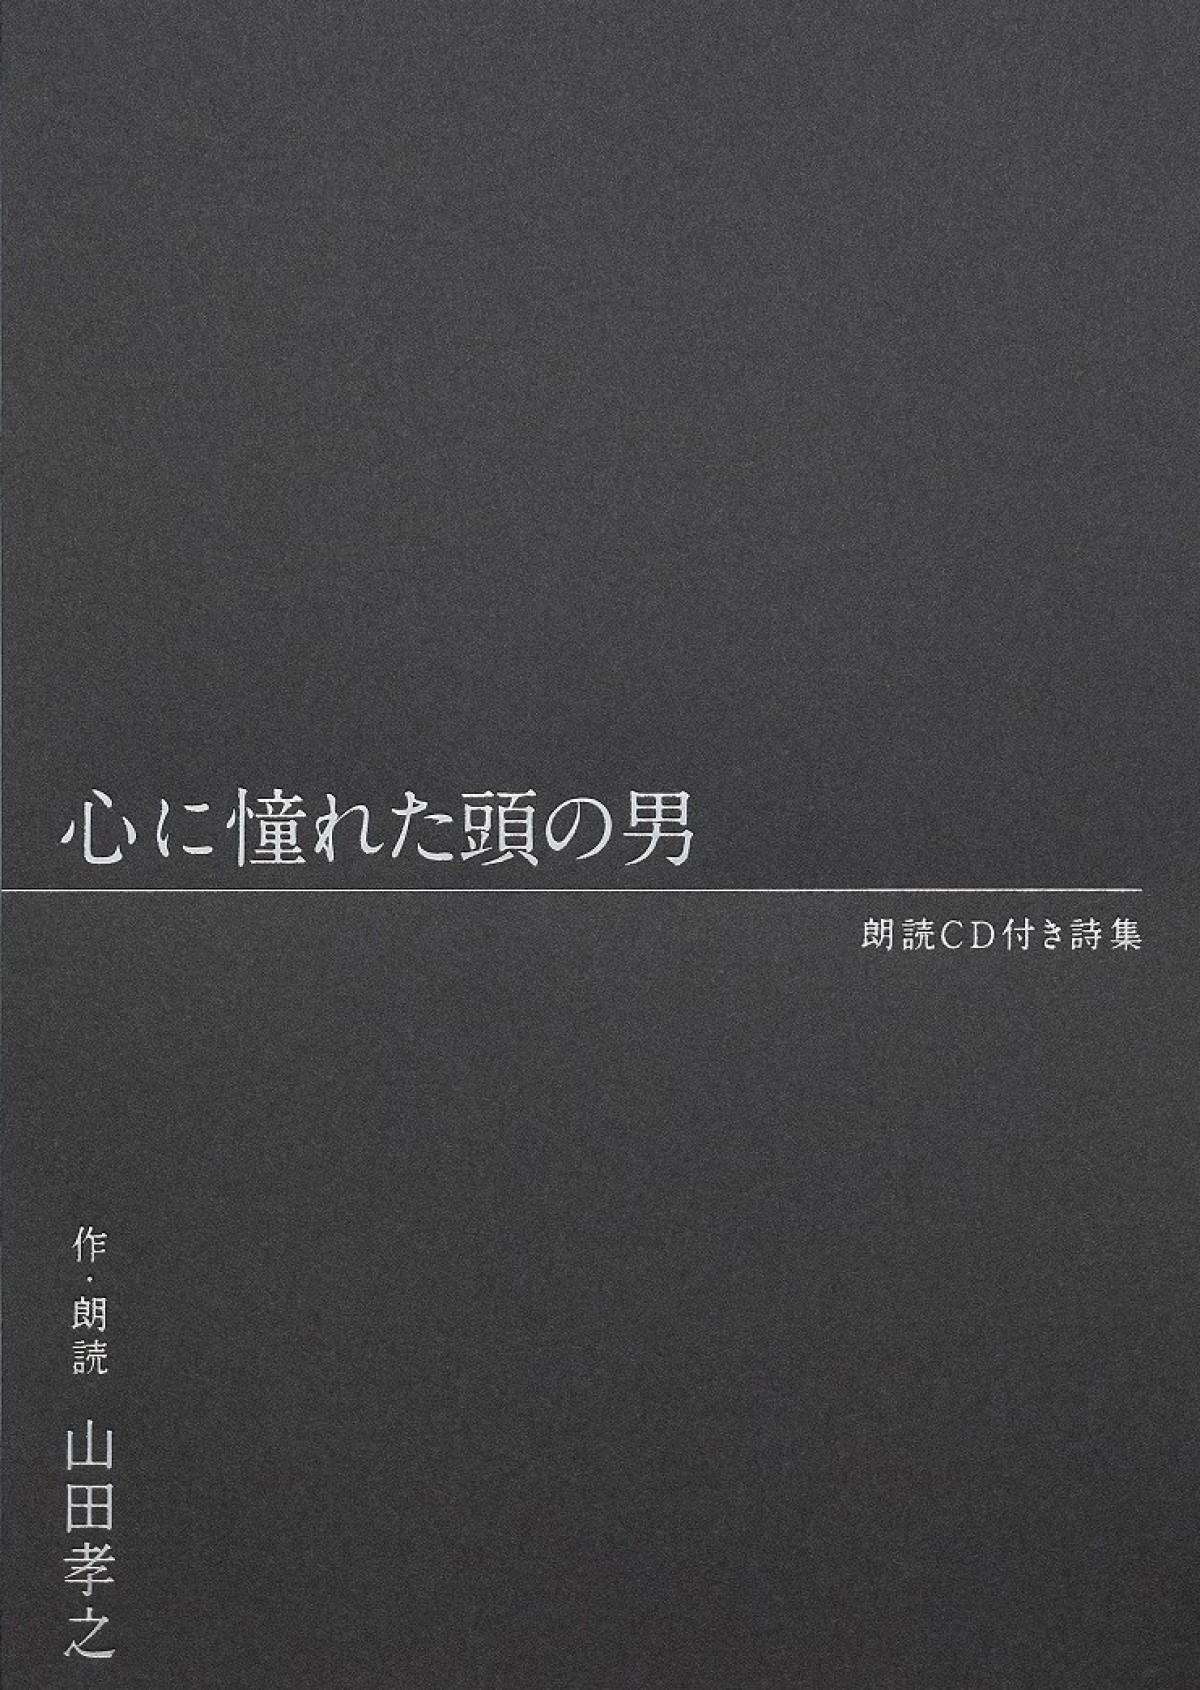 山田孝之、朗読CD付き詩集『心に憧れた頭の男』発売決定